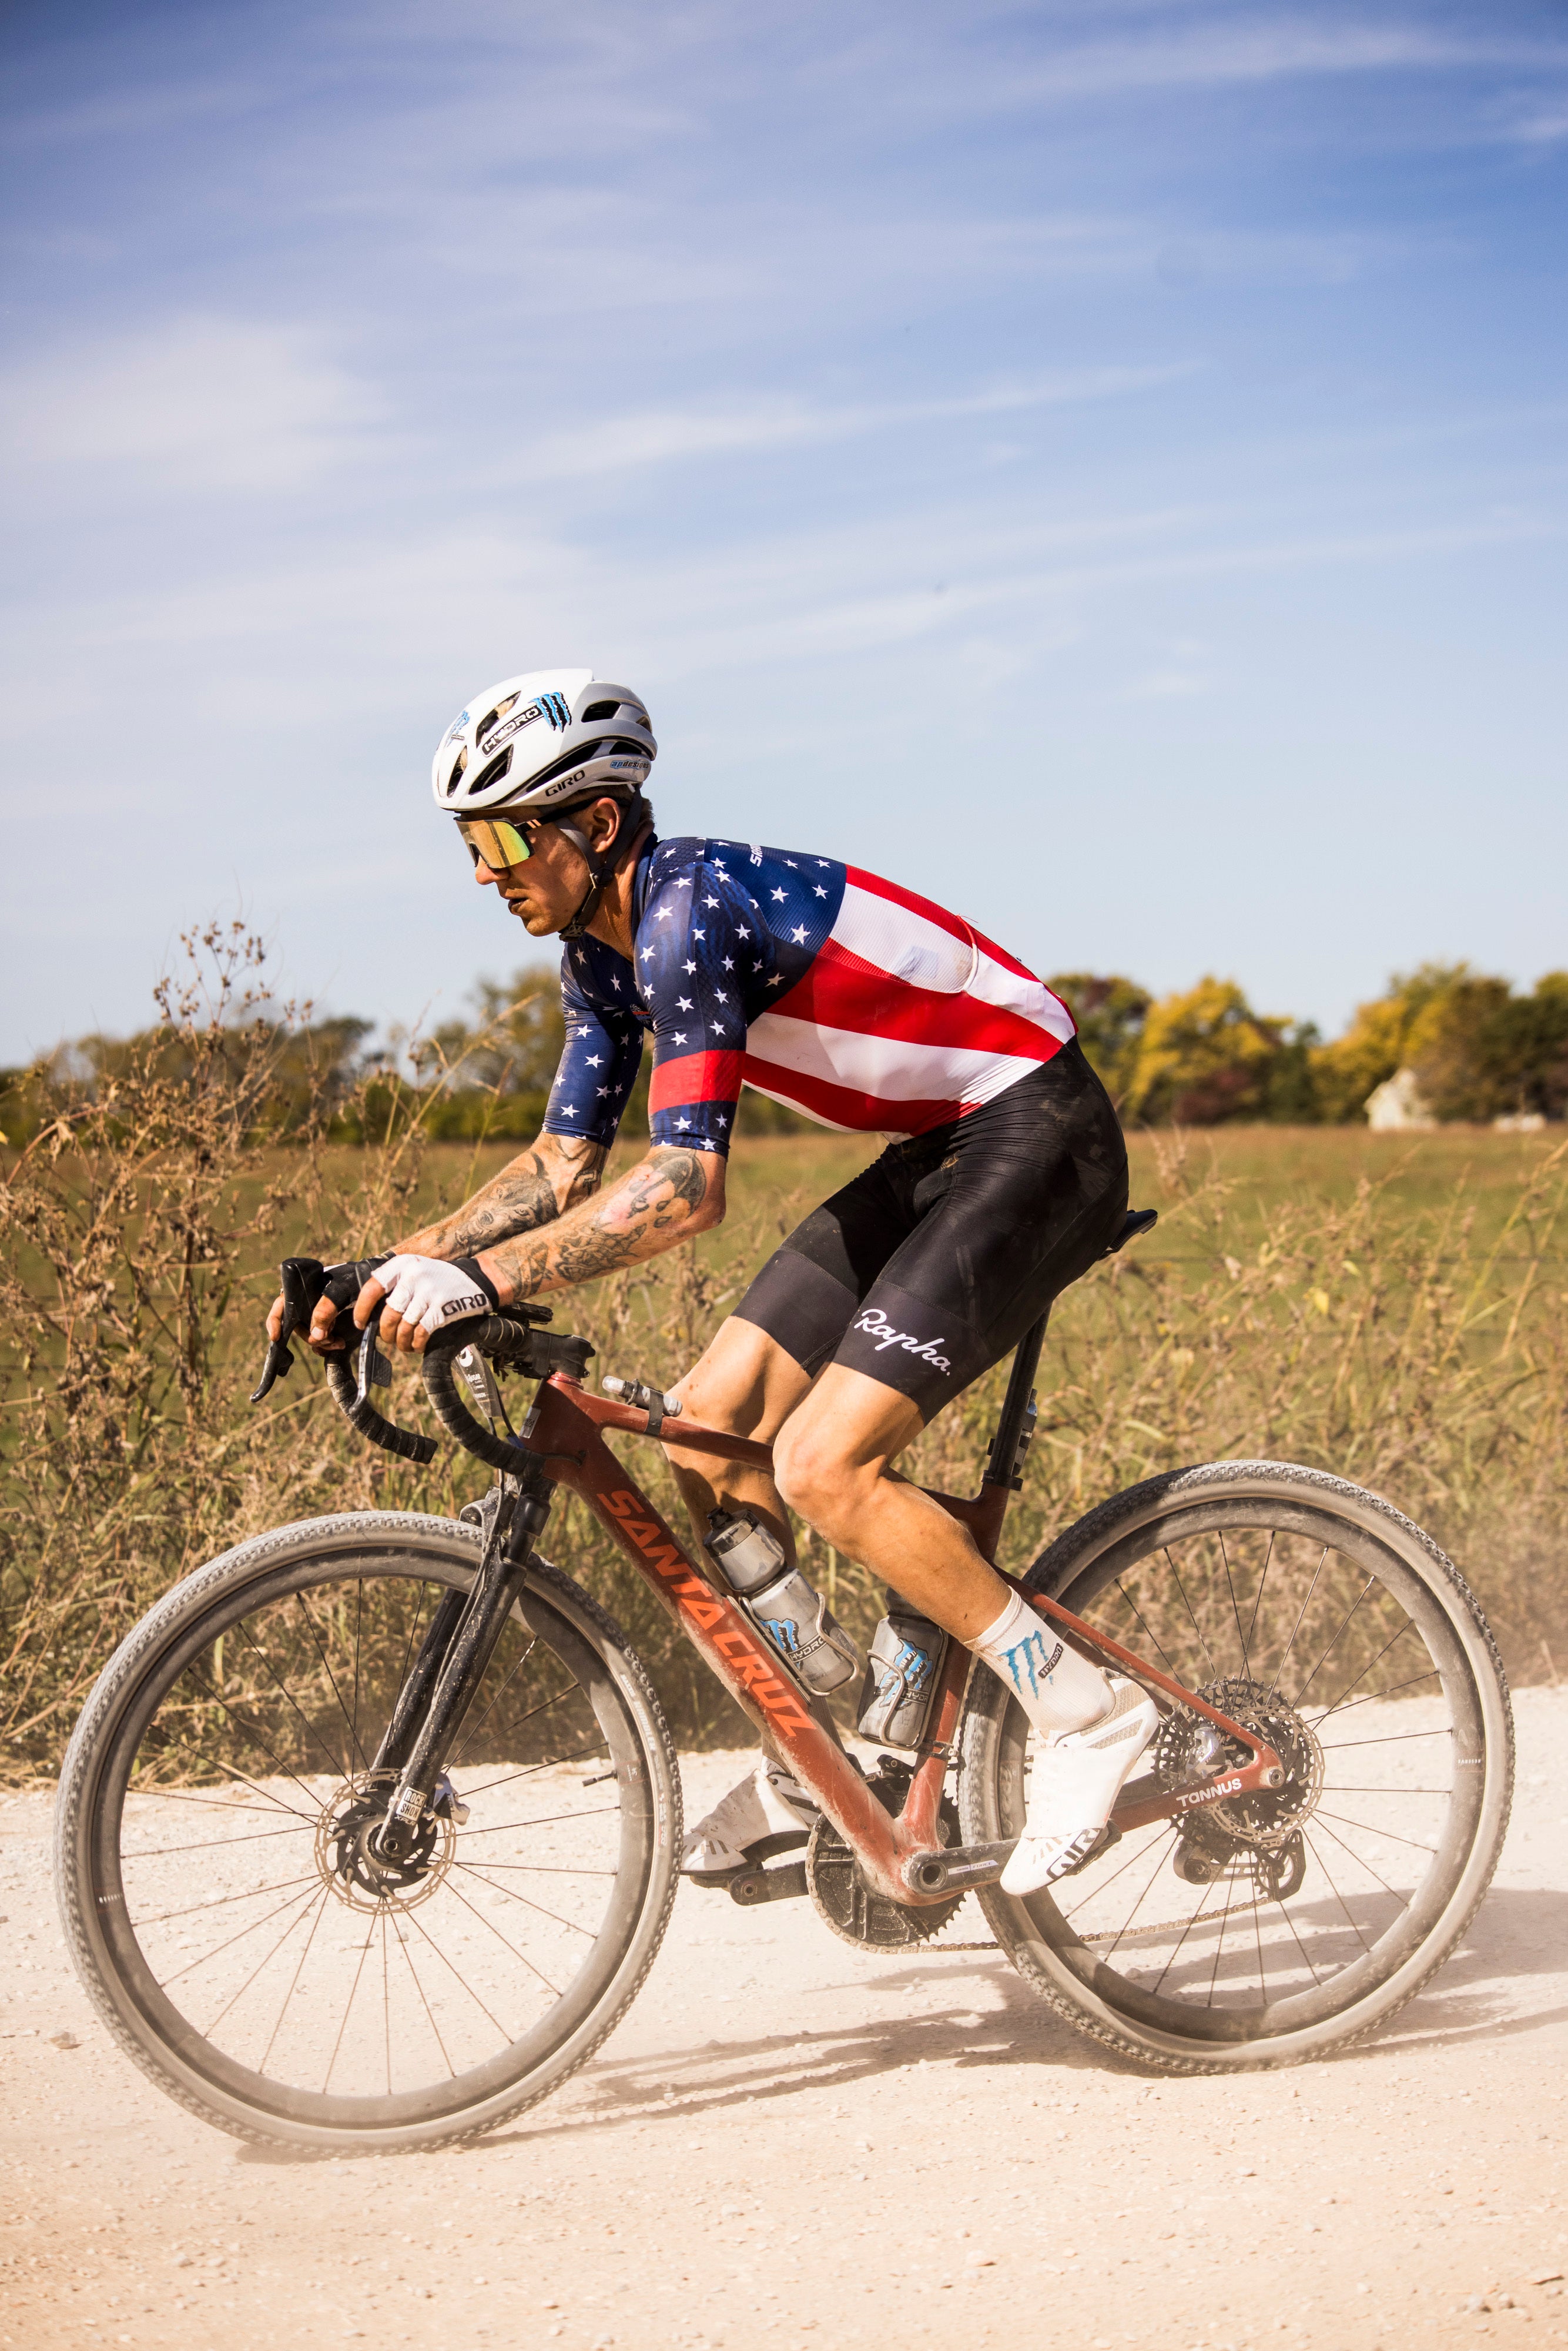 Keegan bikes a dusty road wearing an american flag biker suit. He looks focused.